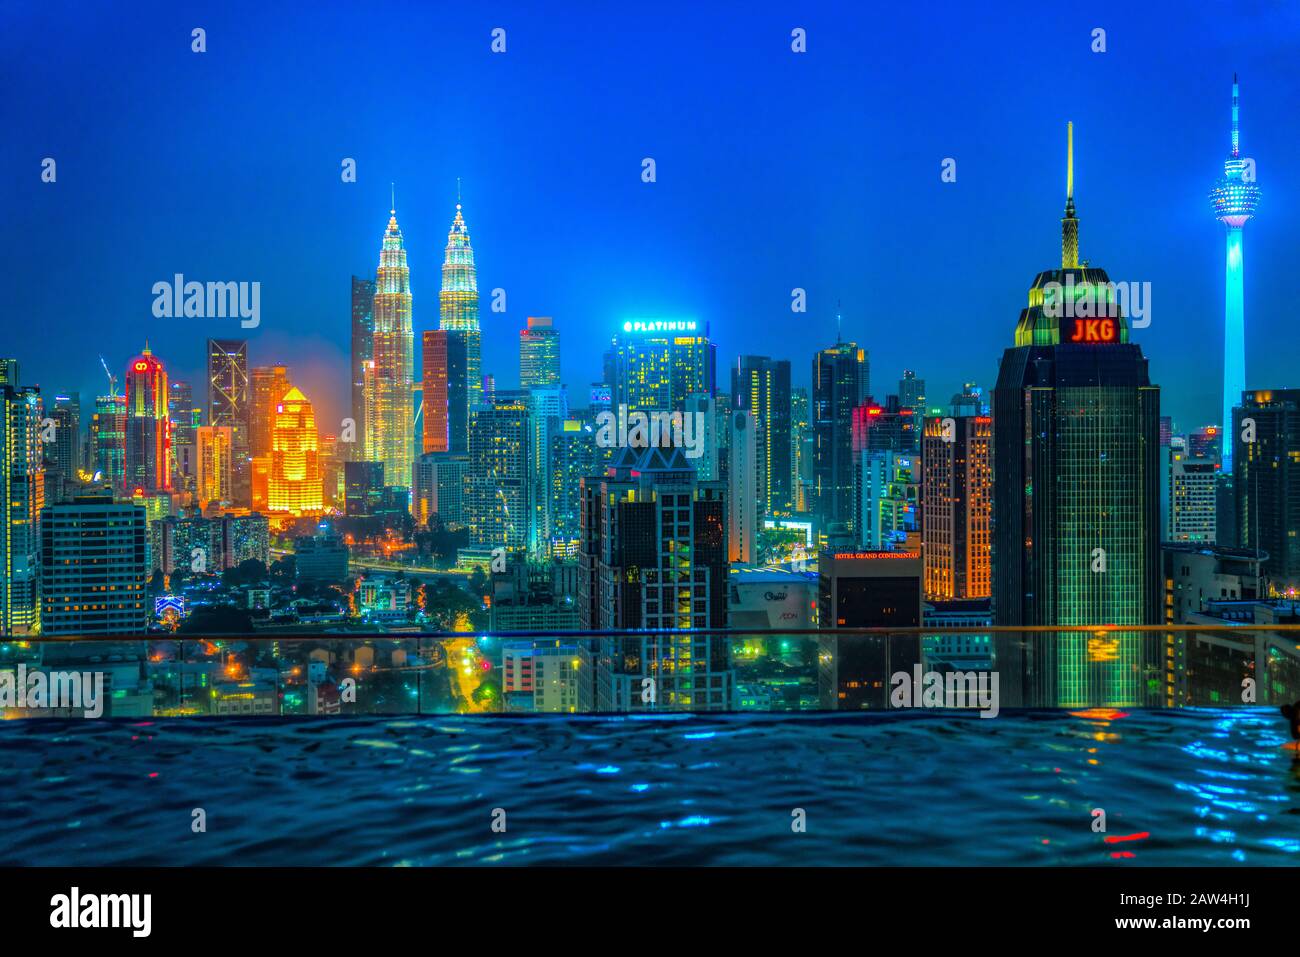 Kuala LUMPUR, MALAISIE - 19 FÉVRIER 2018 : horizon de la ville de Kuala Lumpur, avec les célèbres tours jumelles Petronas et la tour Kl. Banque D'Images